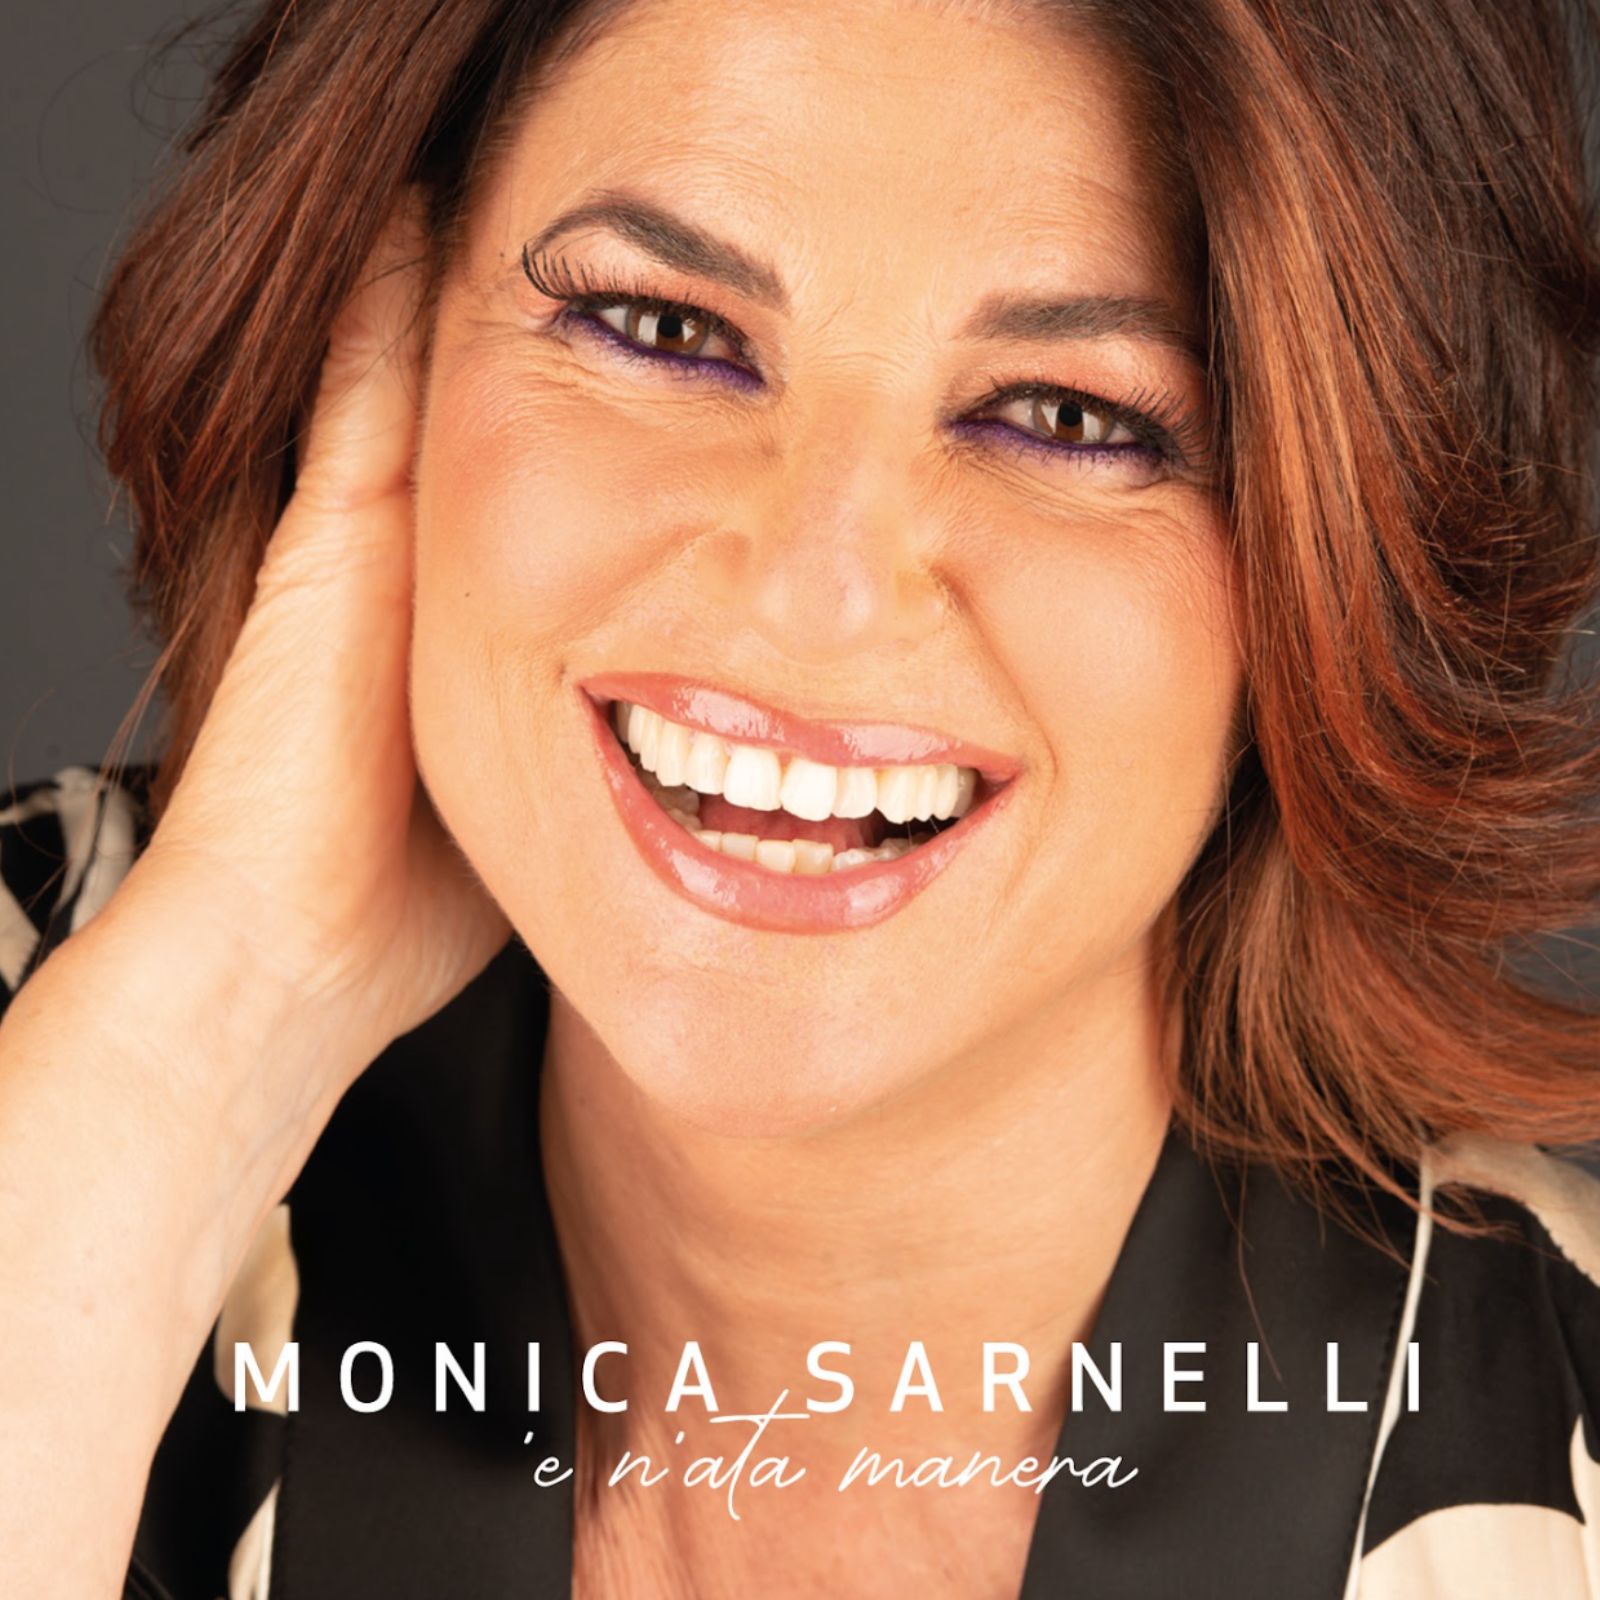 “Voglio parla’ cu tte”: il nuovo singolo di Monica Sarnelli estratto dall’album “E n’ata manera”